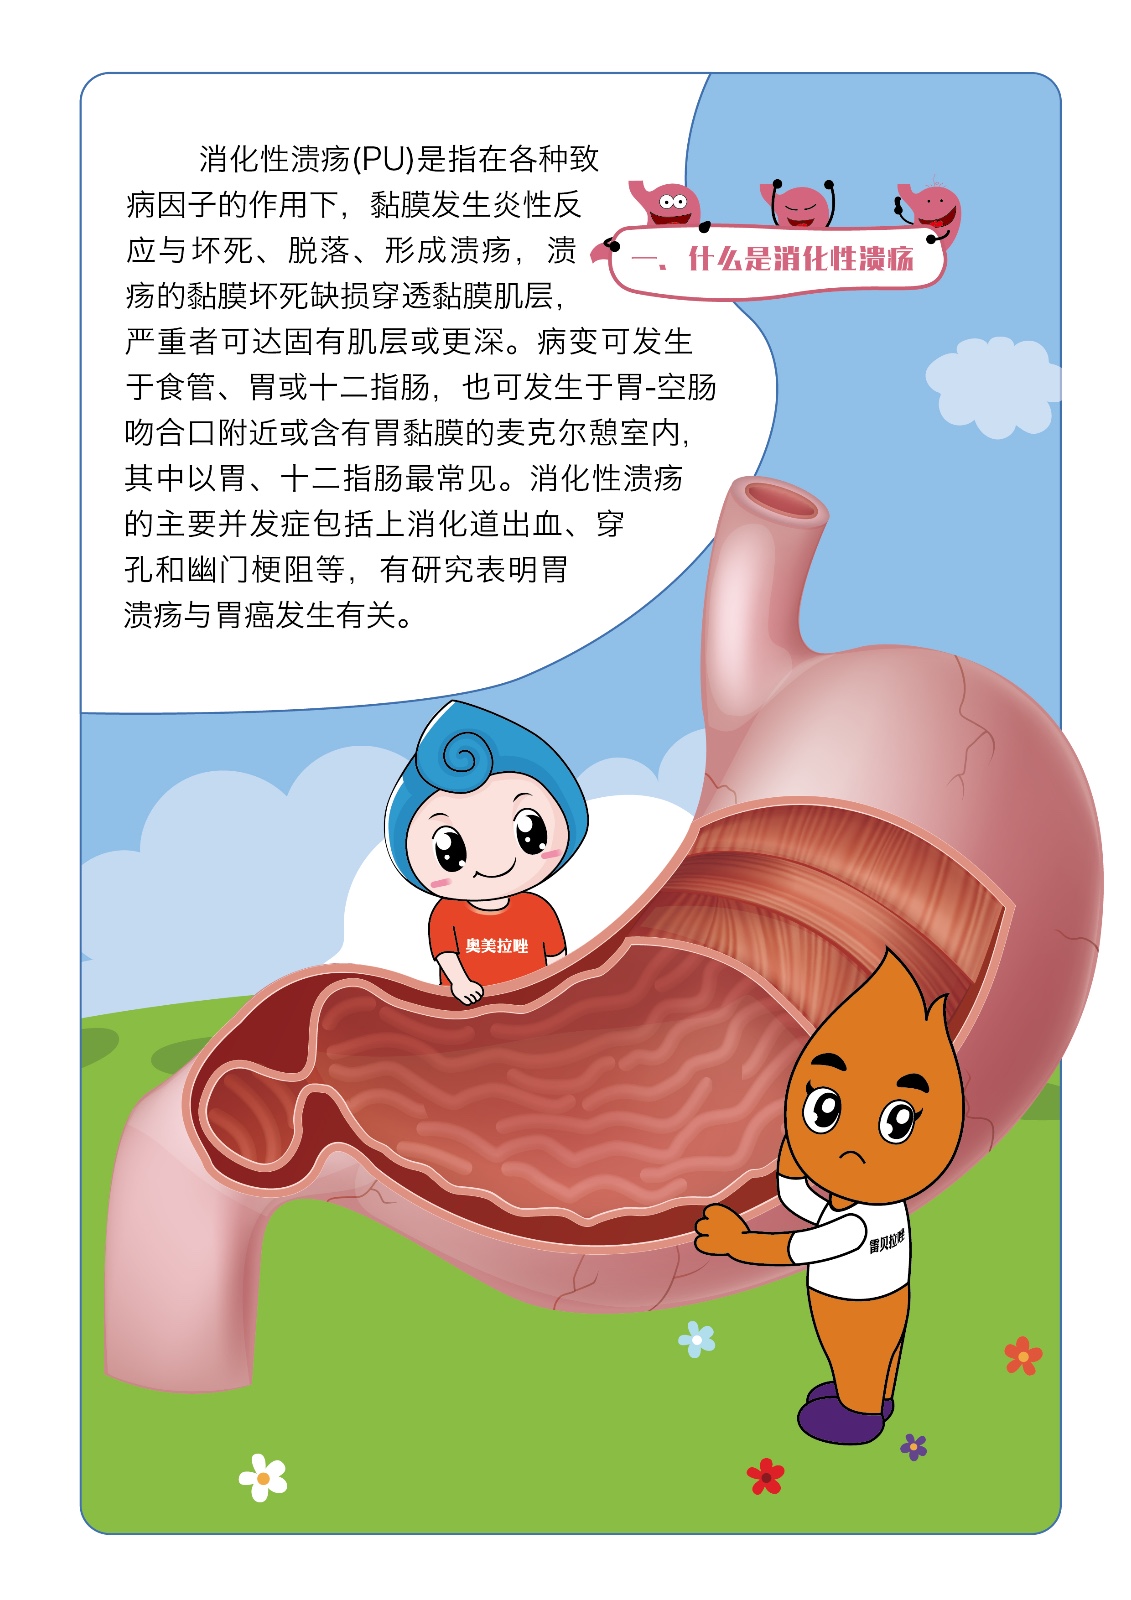 男性尿道口尖锐湿症状图片-张磊-爱问医生